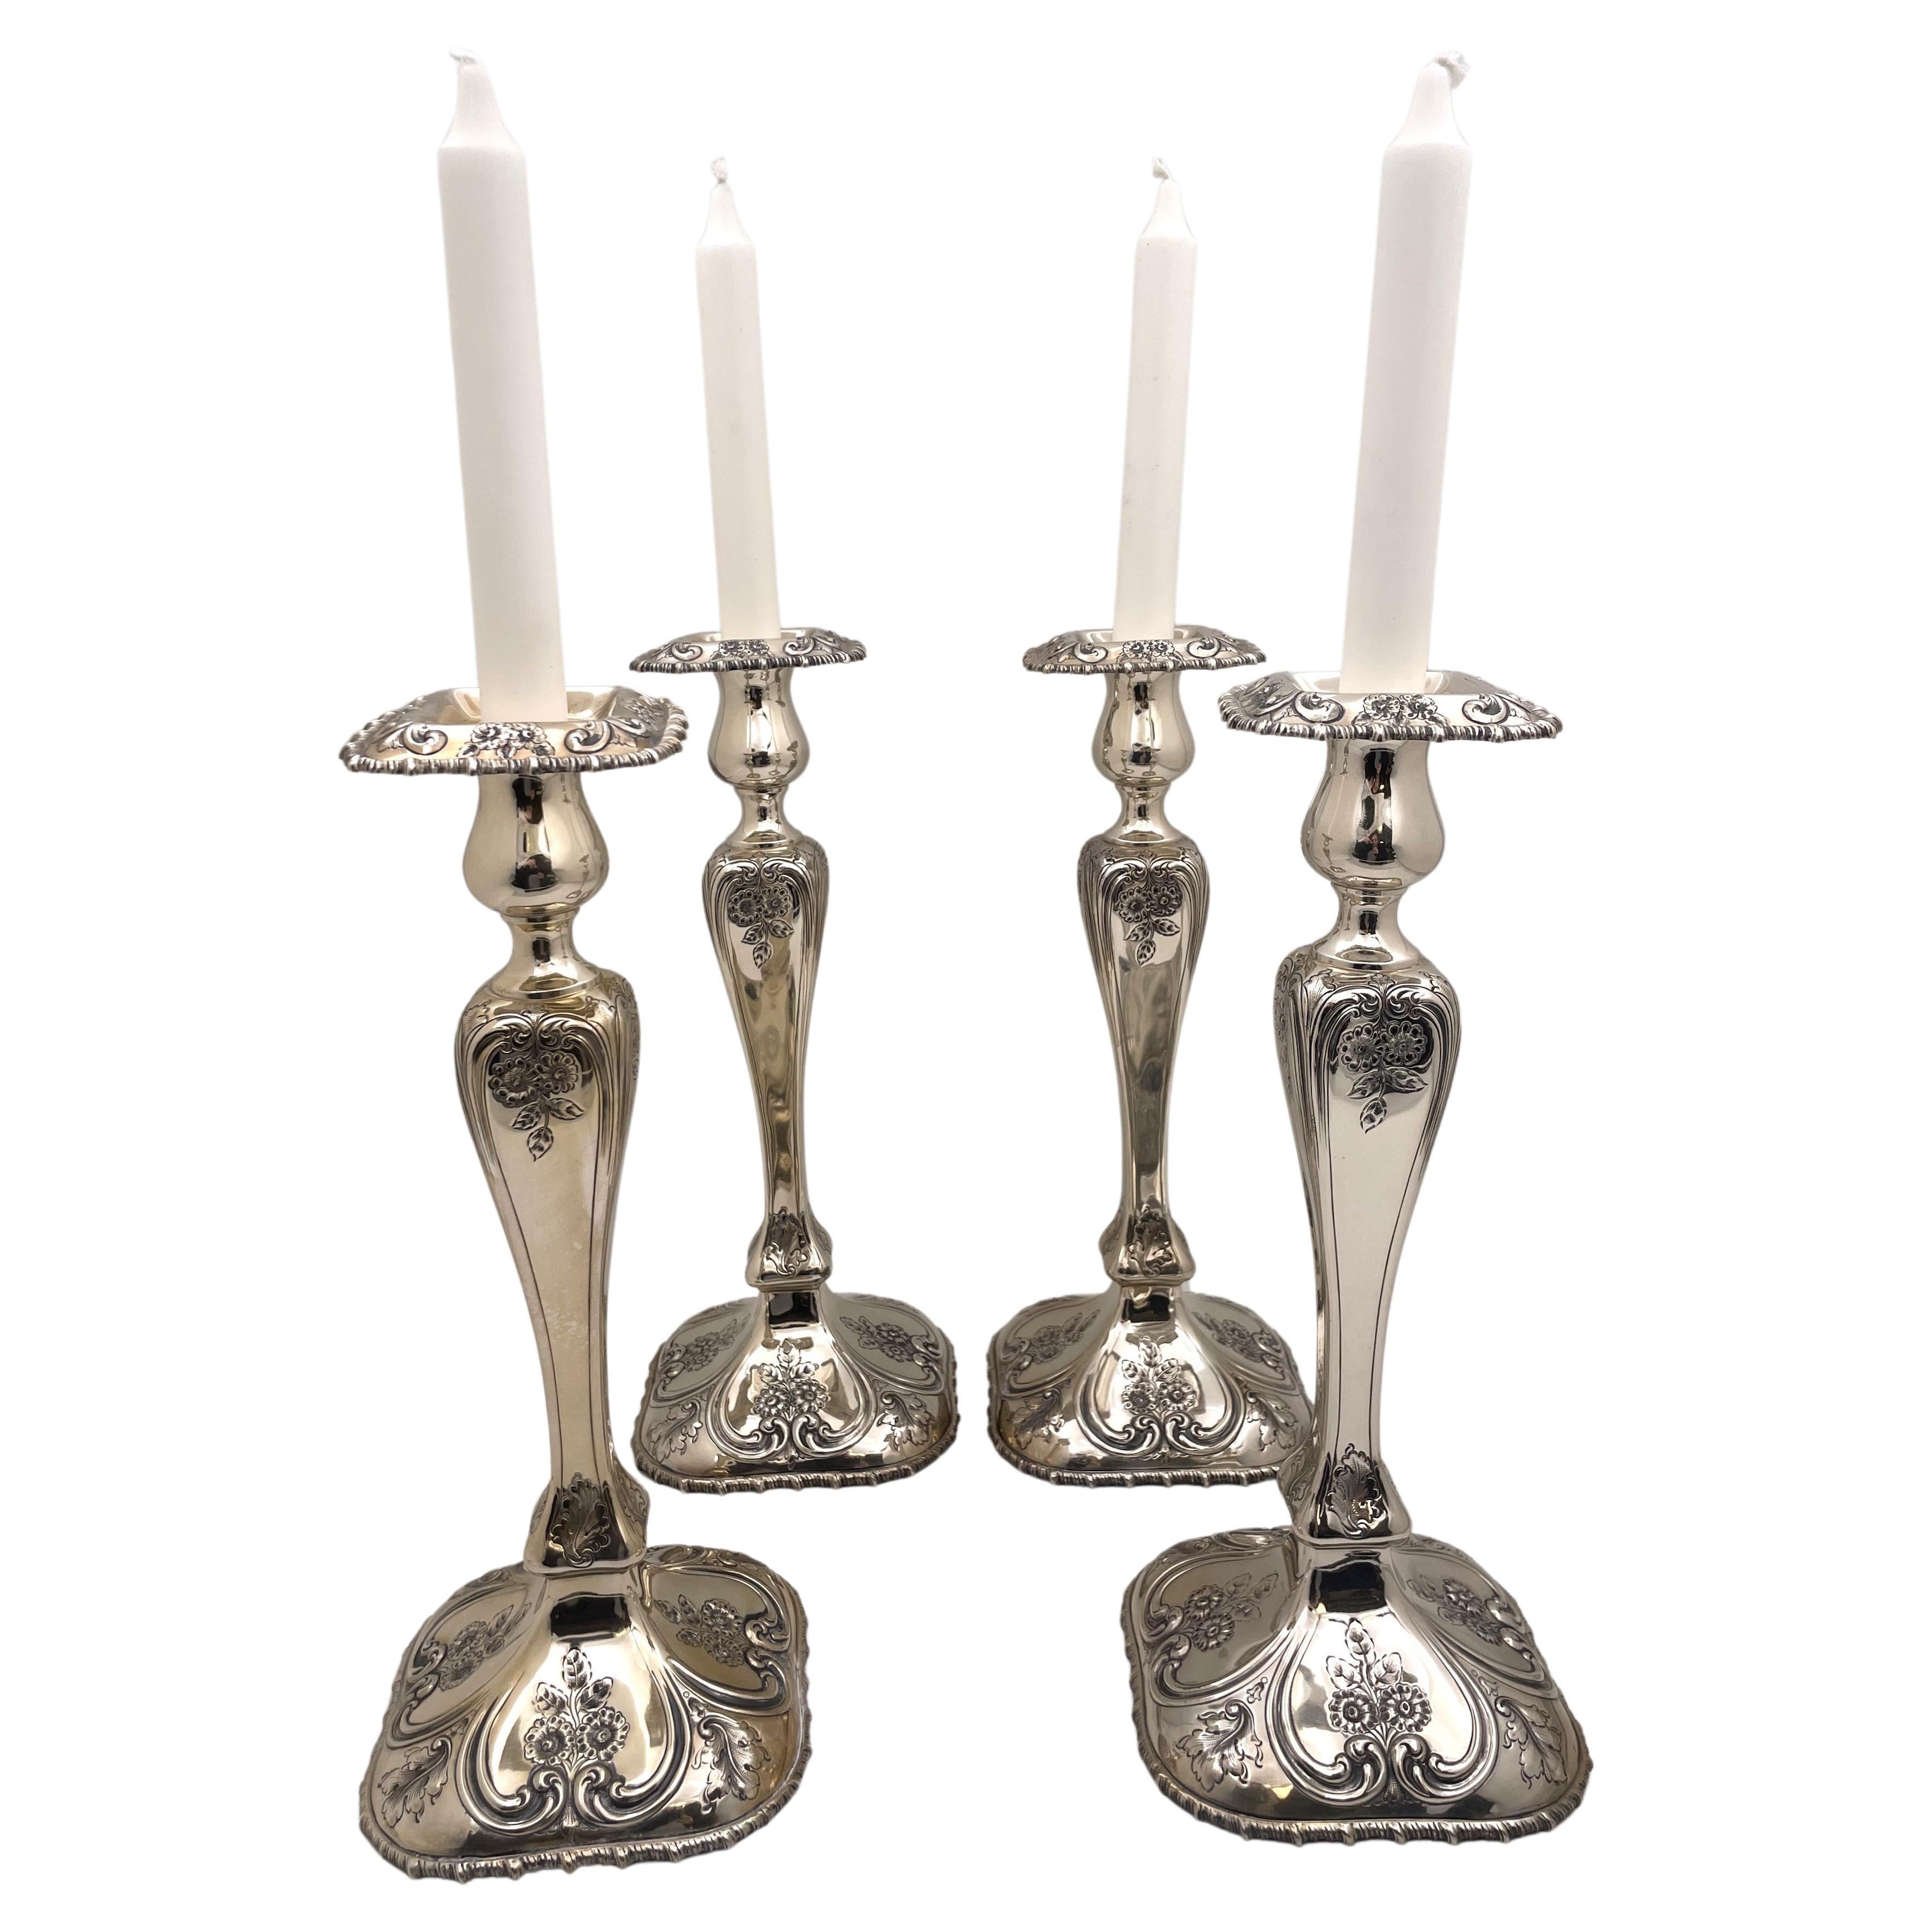 Shreve & Co. Ensemble de 4 chandeliers en argent sterling de style Art nouveau